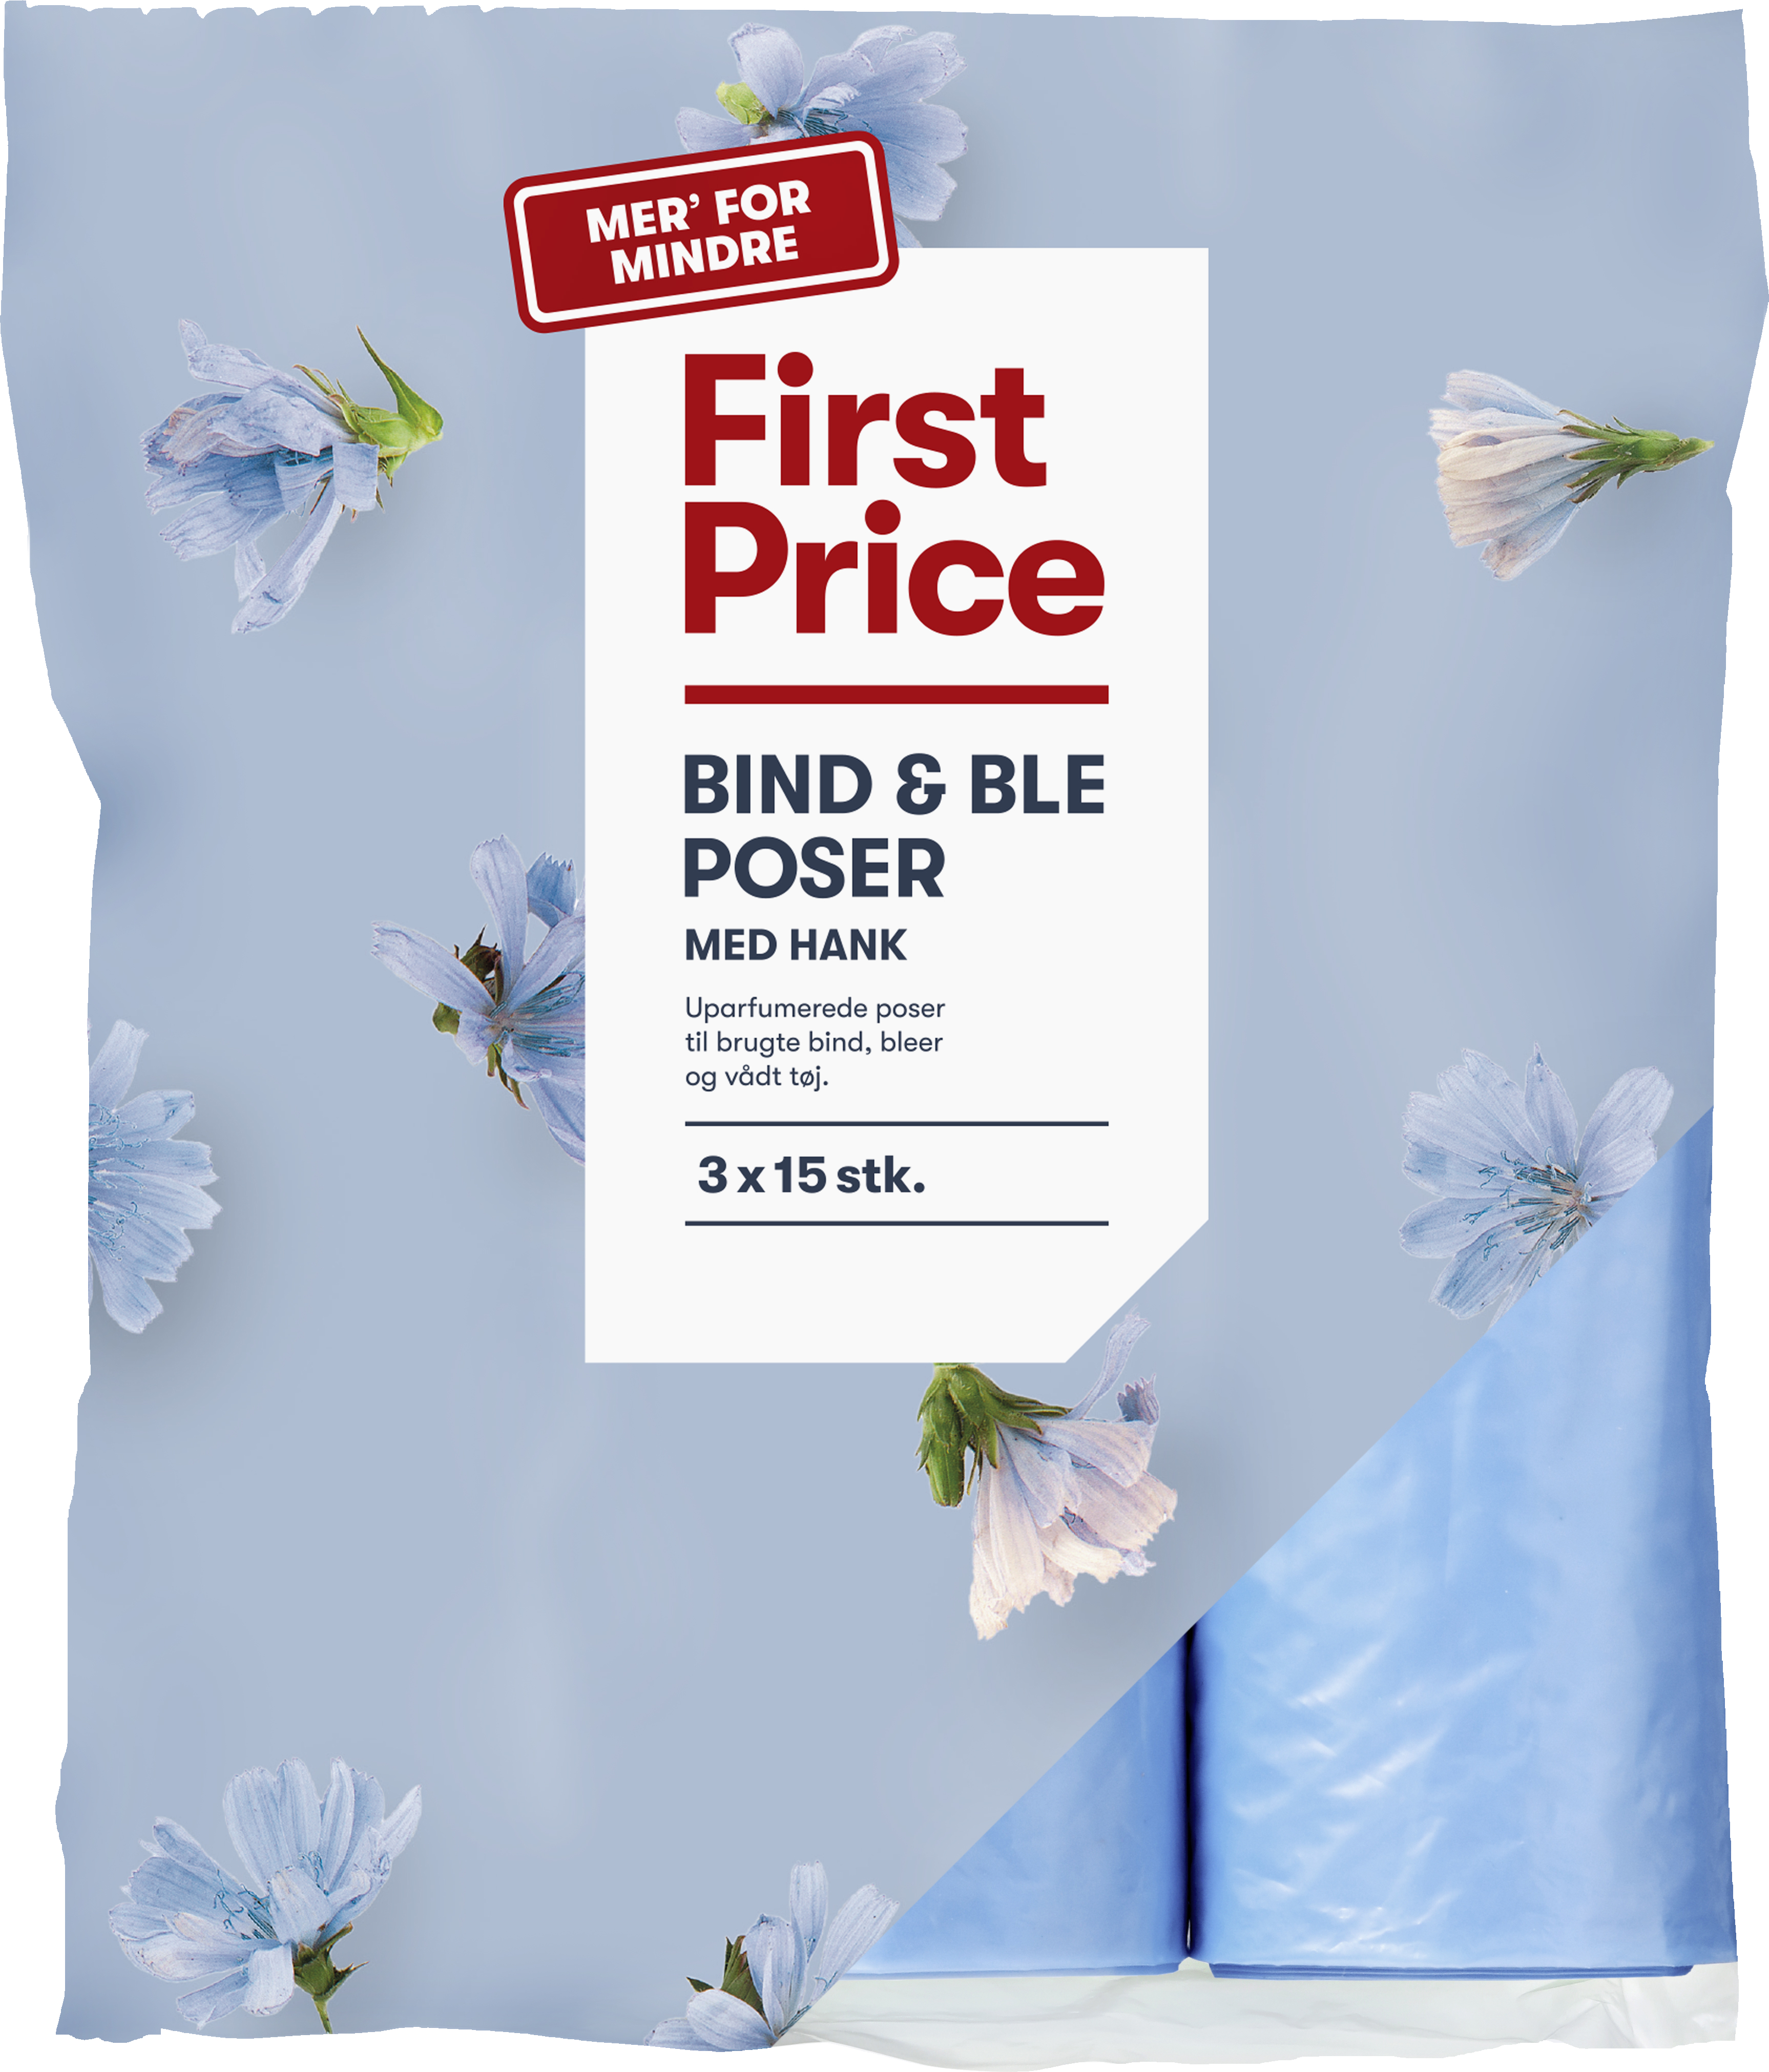 Ære Parcel mestre First Price Bind- & Bleposer m. hank 3x15 stk. - TILBEHØR - VIN MED MERE .DK